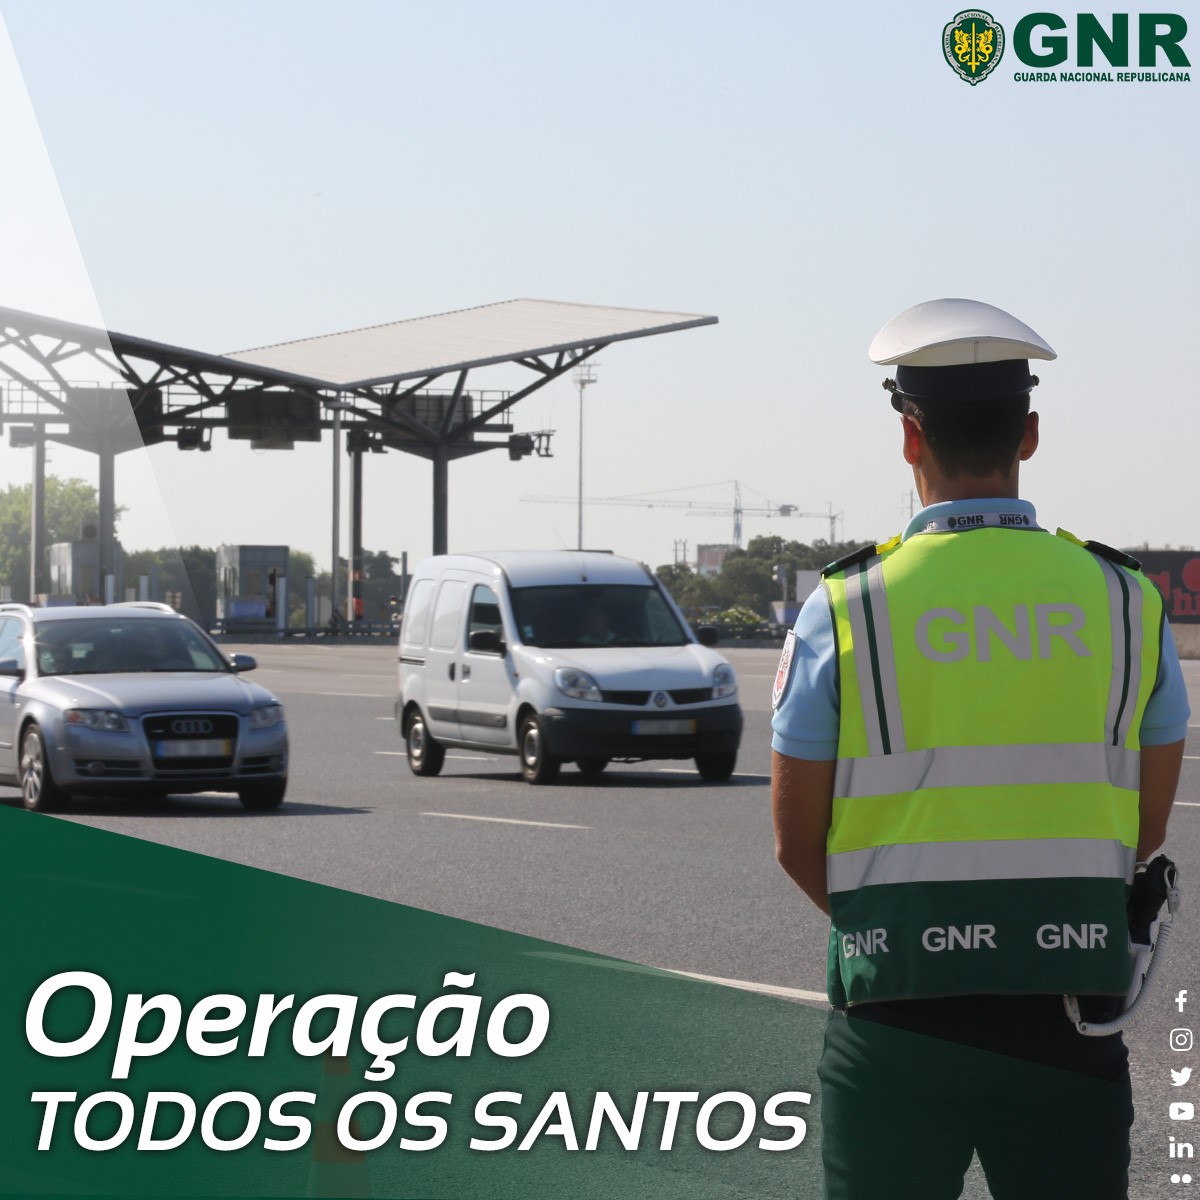 GNR: Operação “Todos os Santos” 2022